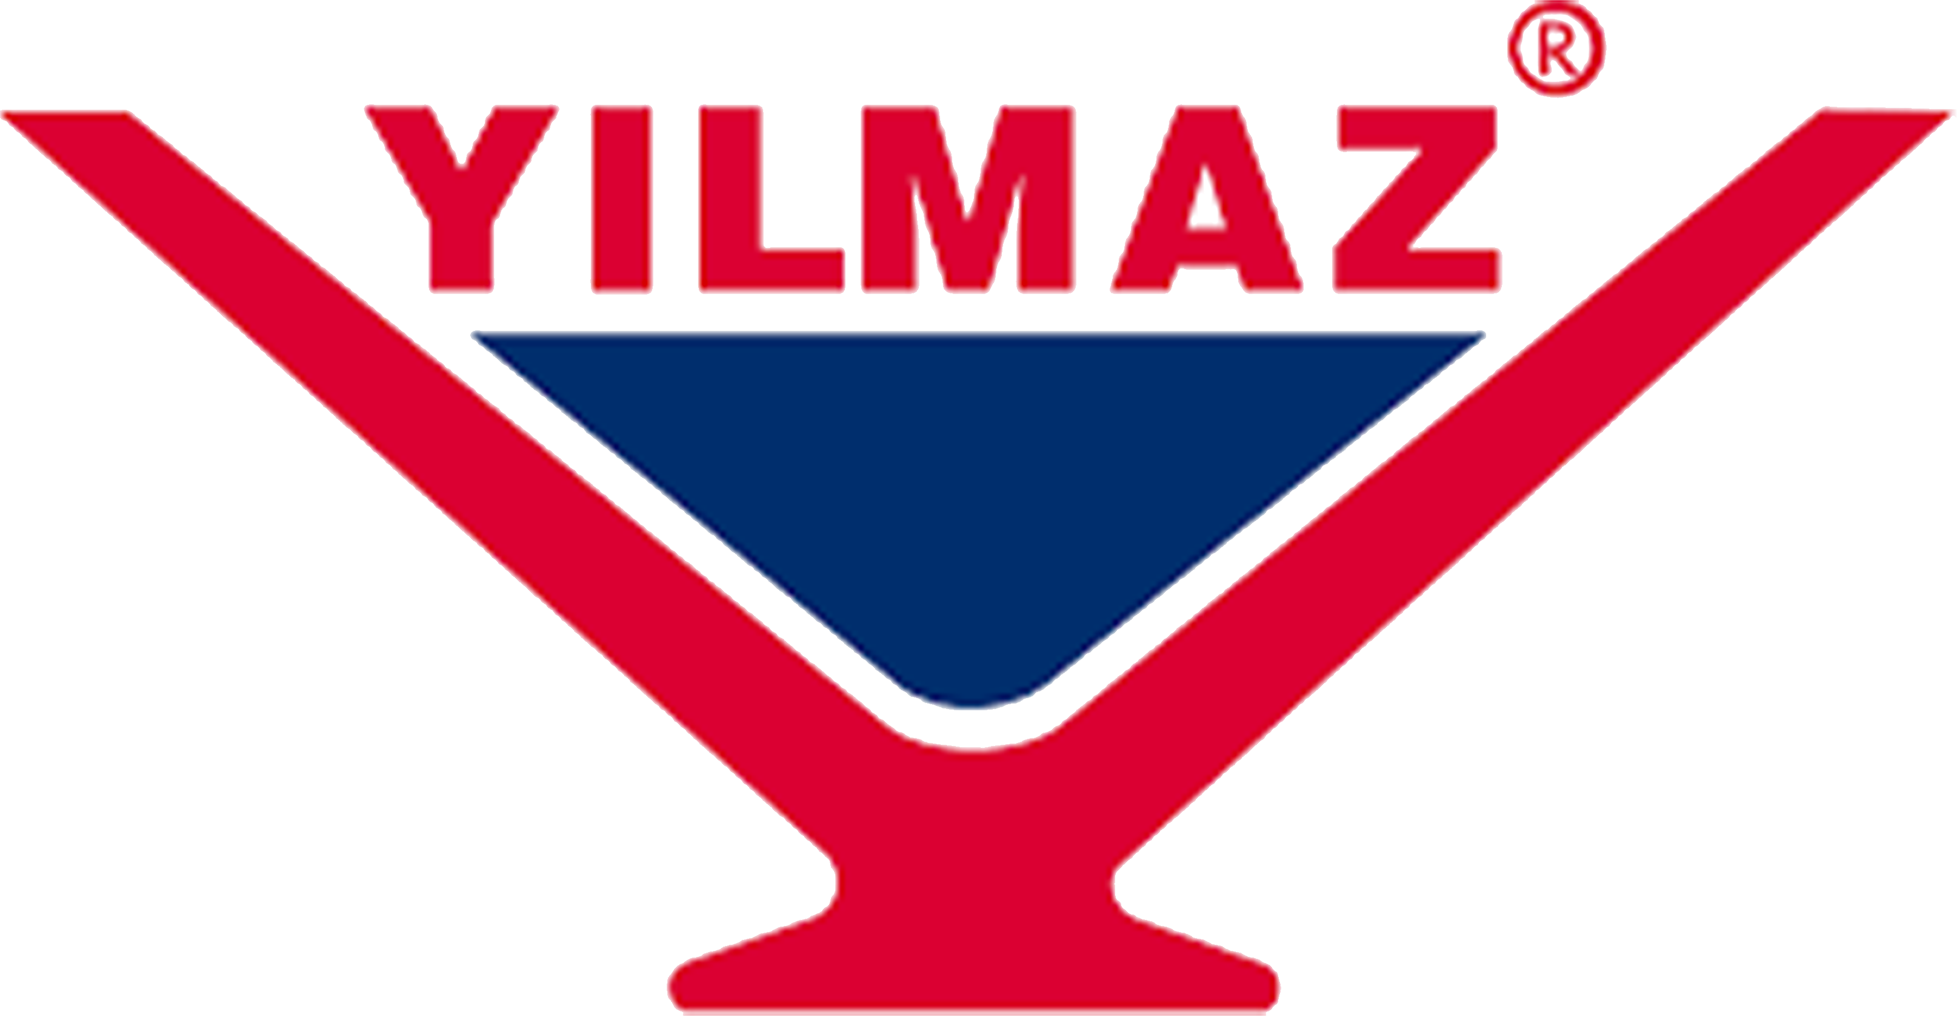 Yilmaz-Yilmaz